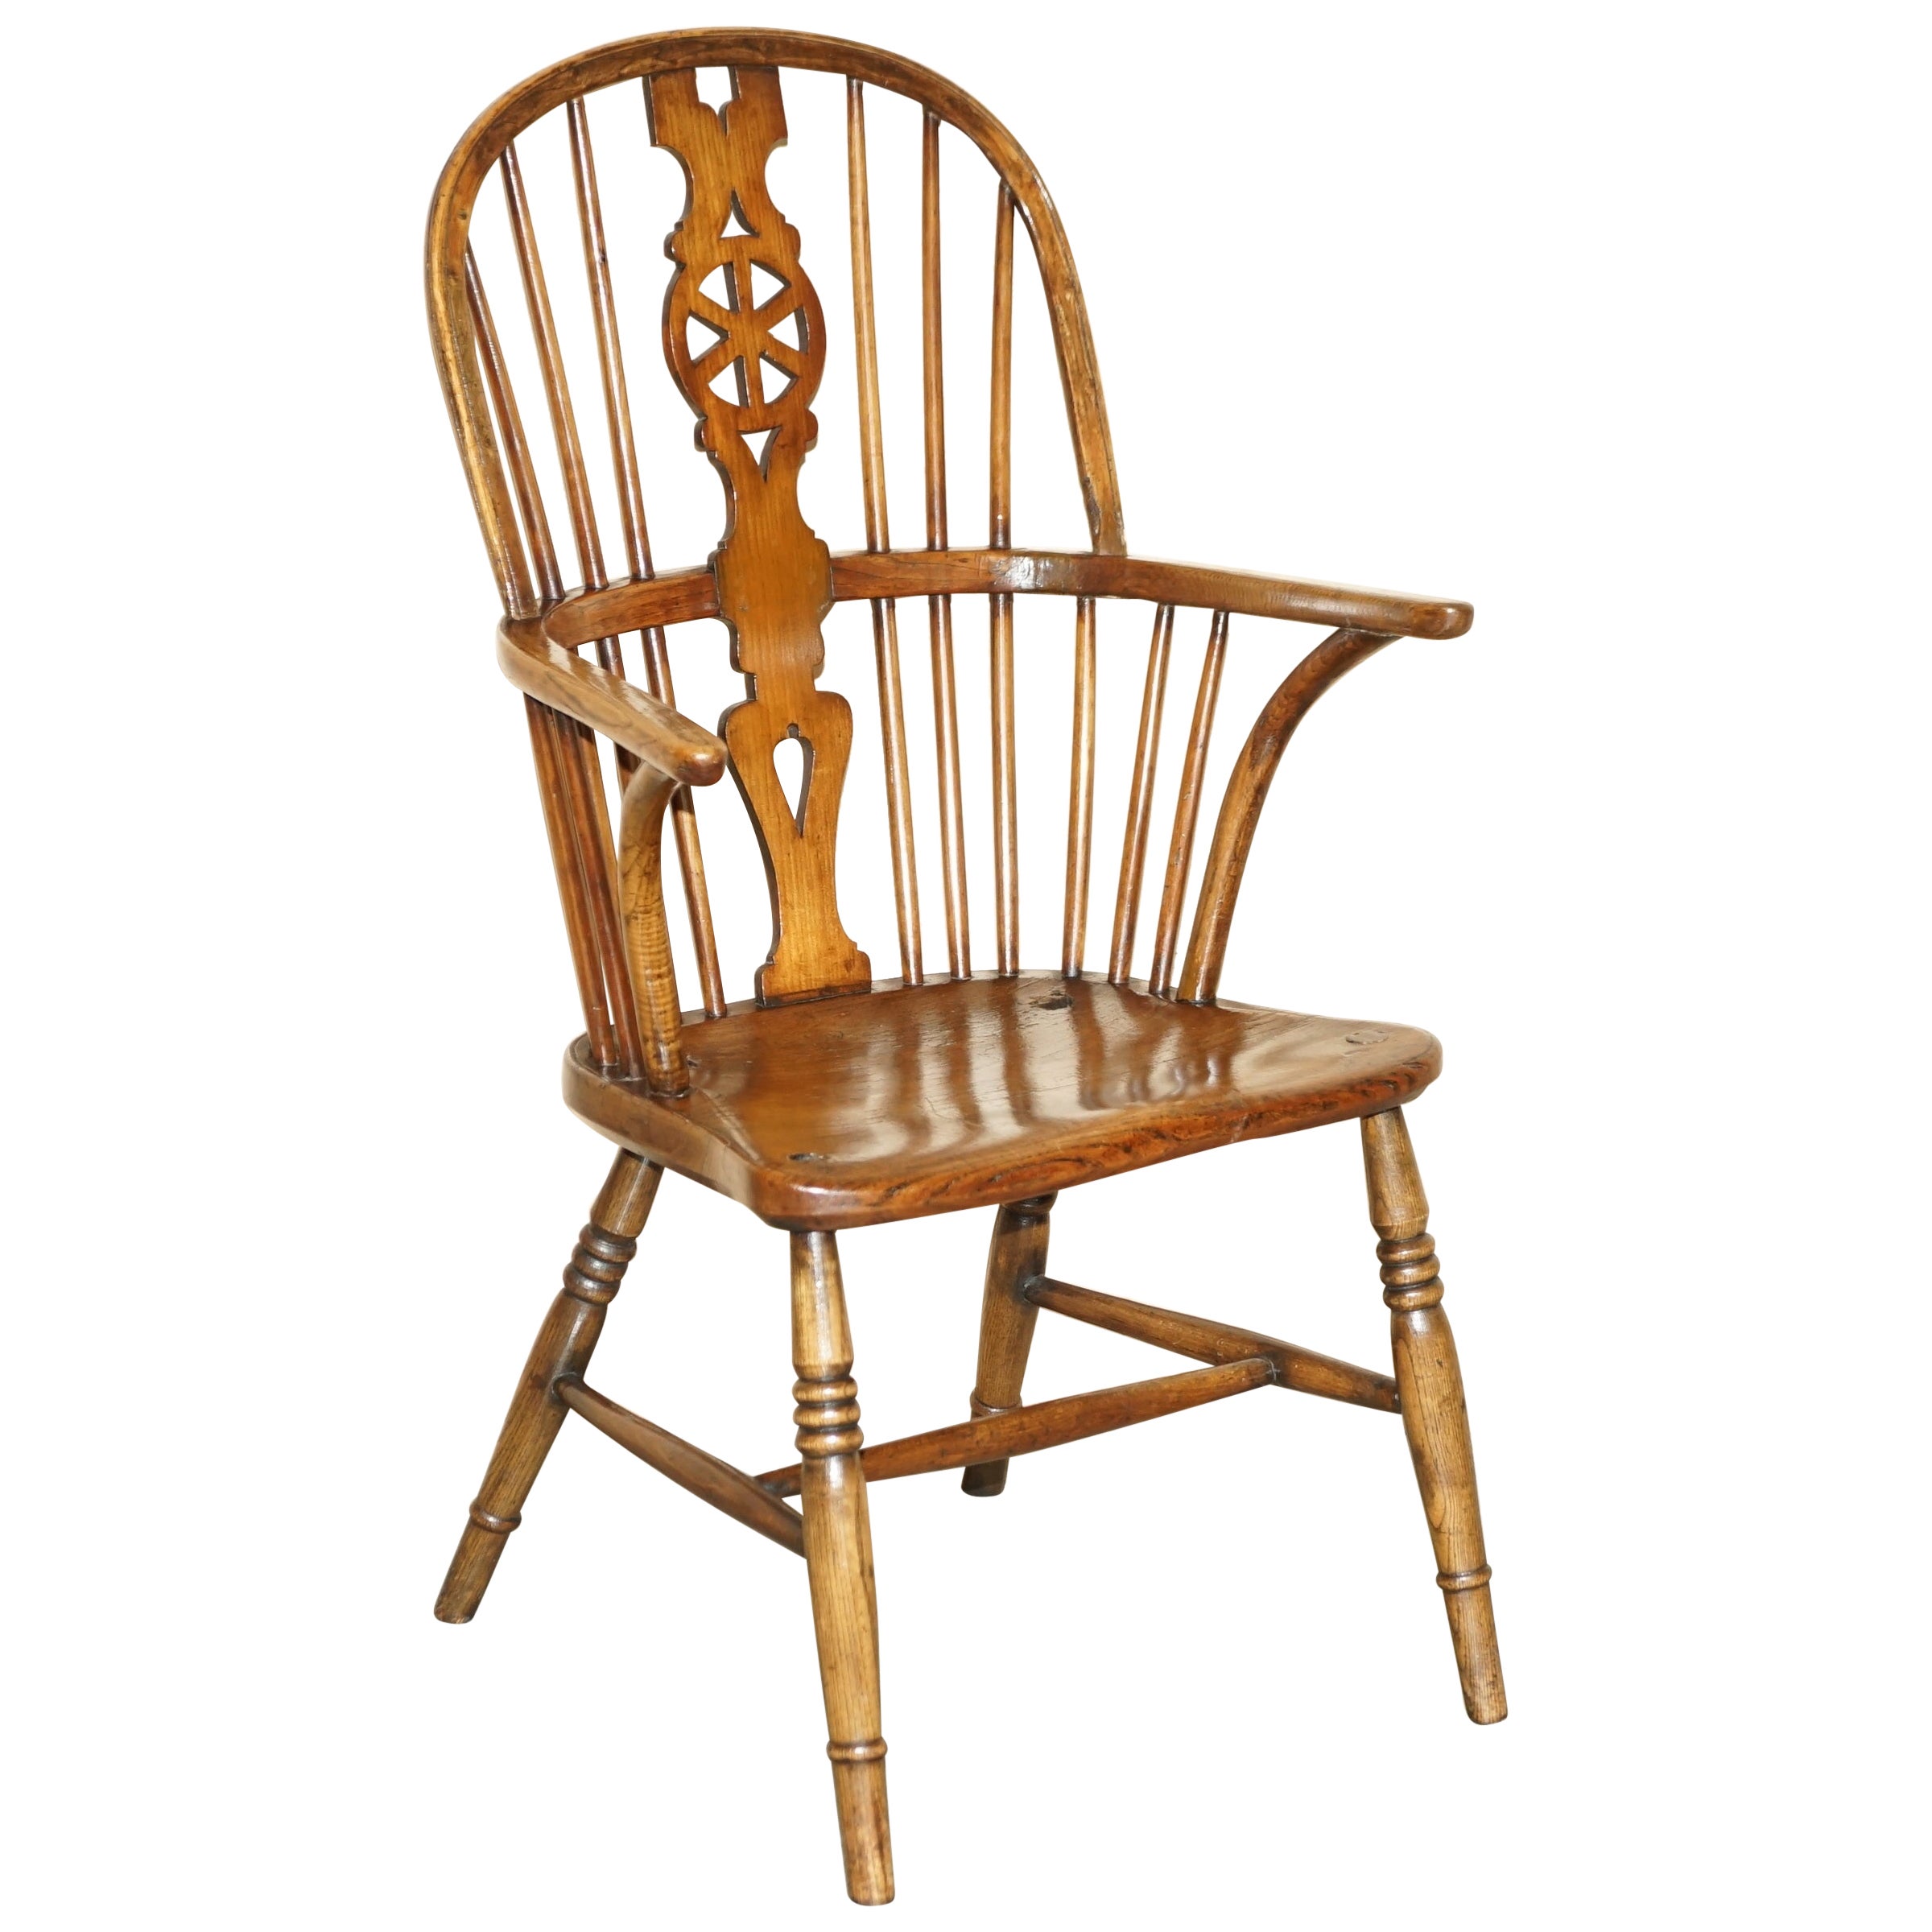 Reicher farbiger antiker Windsor-Sessel aus Ulmenholz mit Radrücken, 19. Jahrhundert